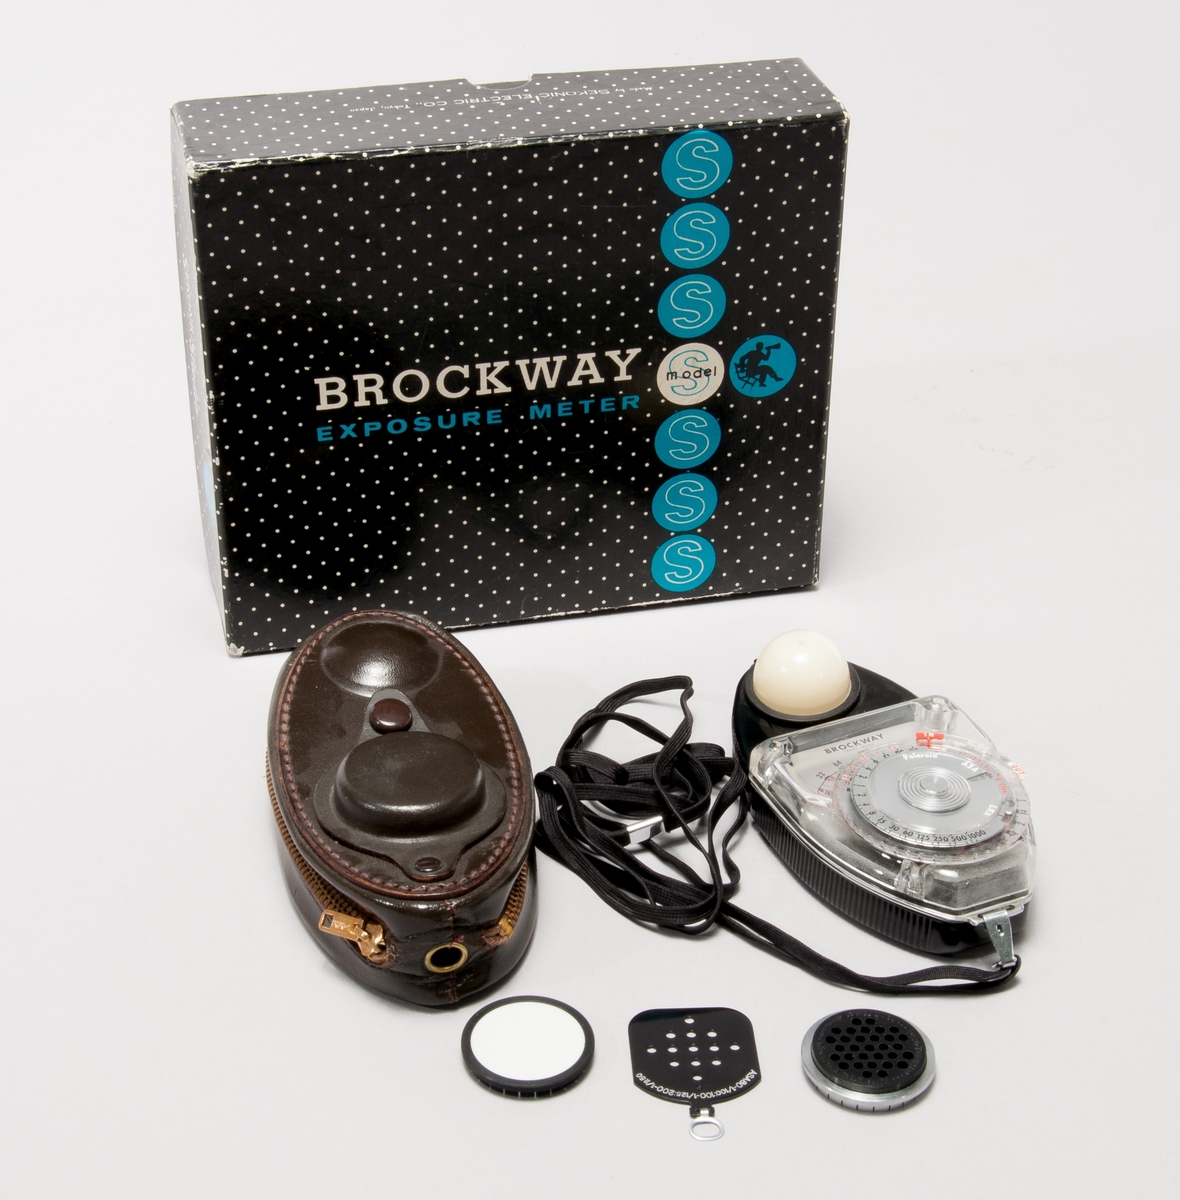 Exponeringsmätare typ Brockway, med vridbart mäthuvud. Olika bländare medföljer för justering efter filmkänslighet. Tillhörande läderetui med förvaringsmöjlighet för tillbehören.
I ask av papp.